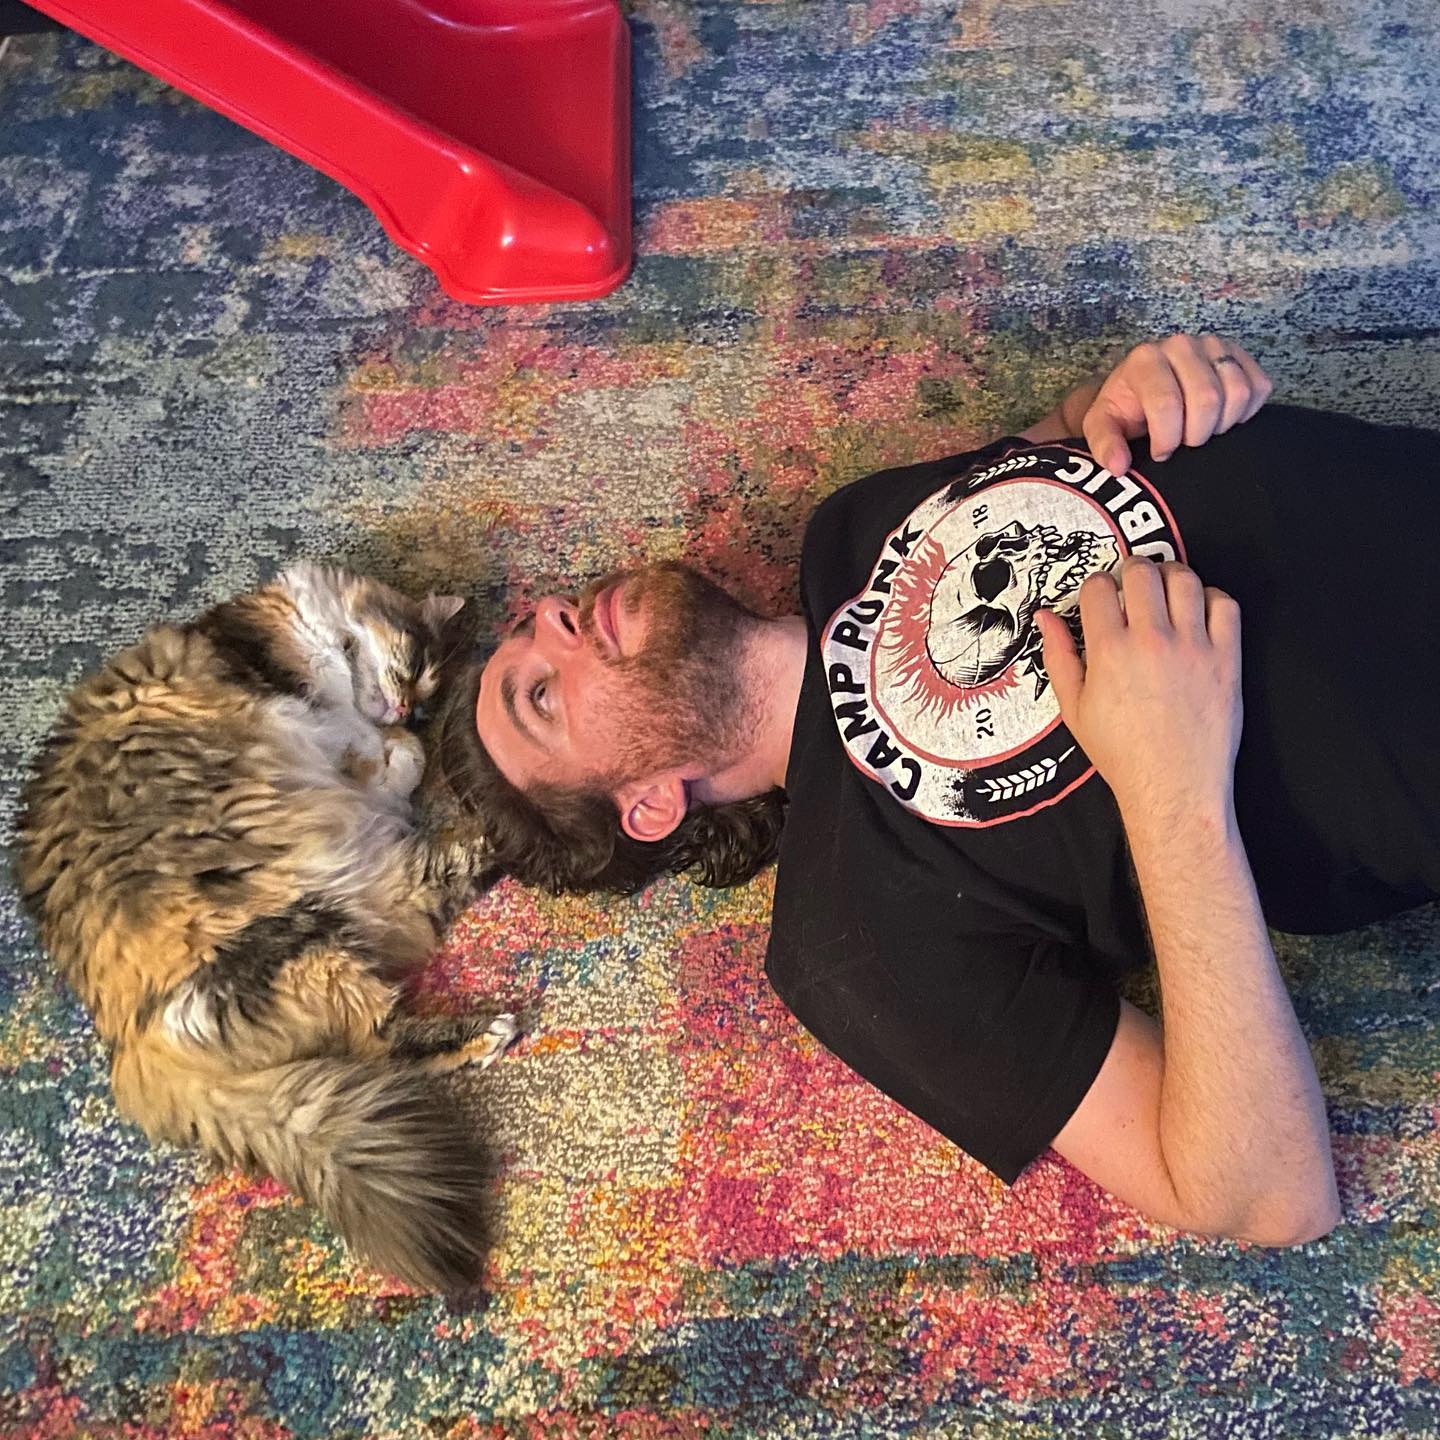 Dan Spano and OK cat